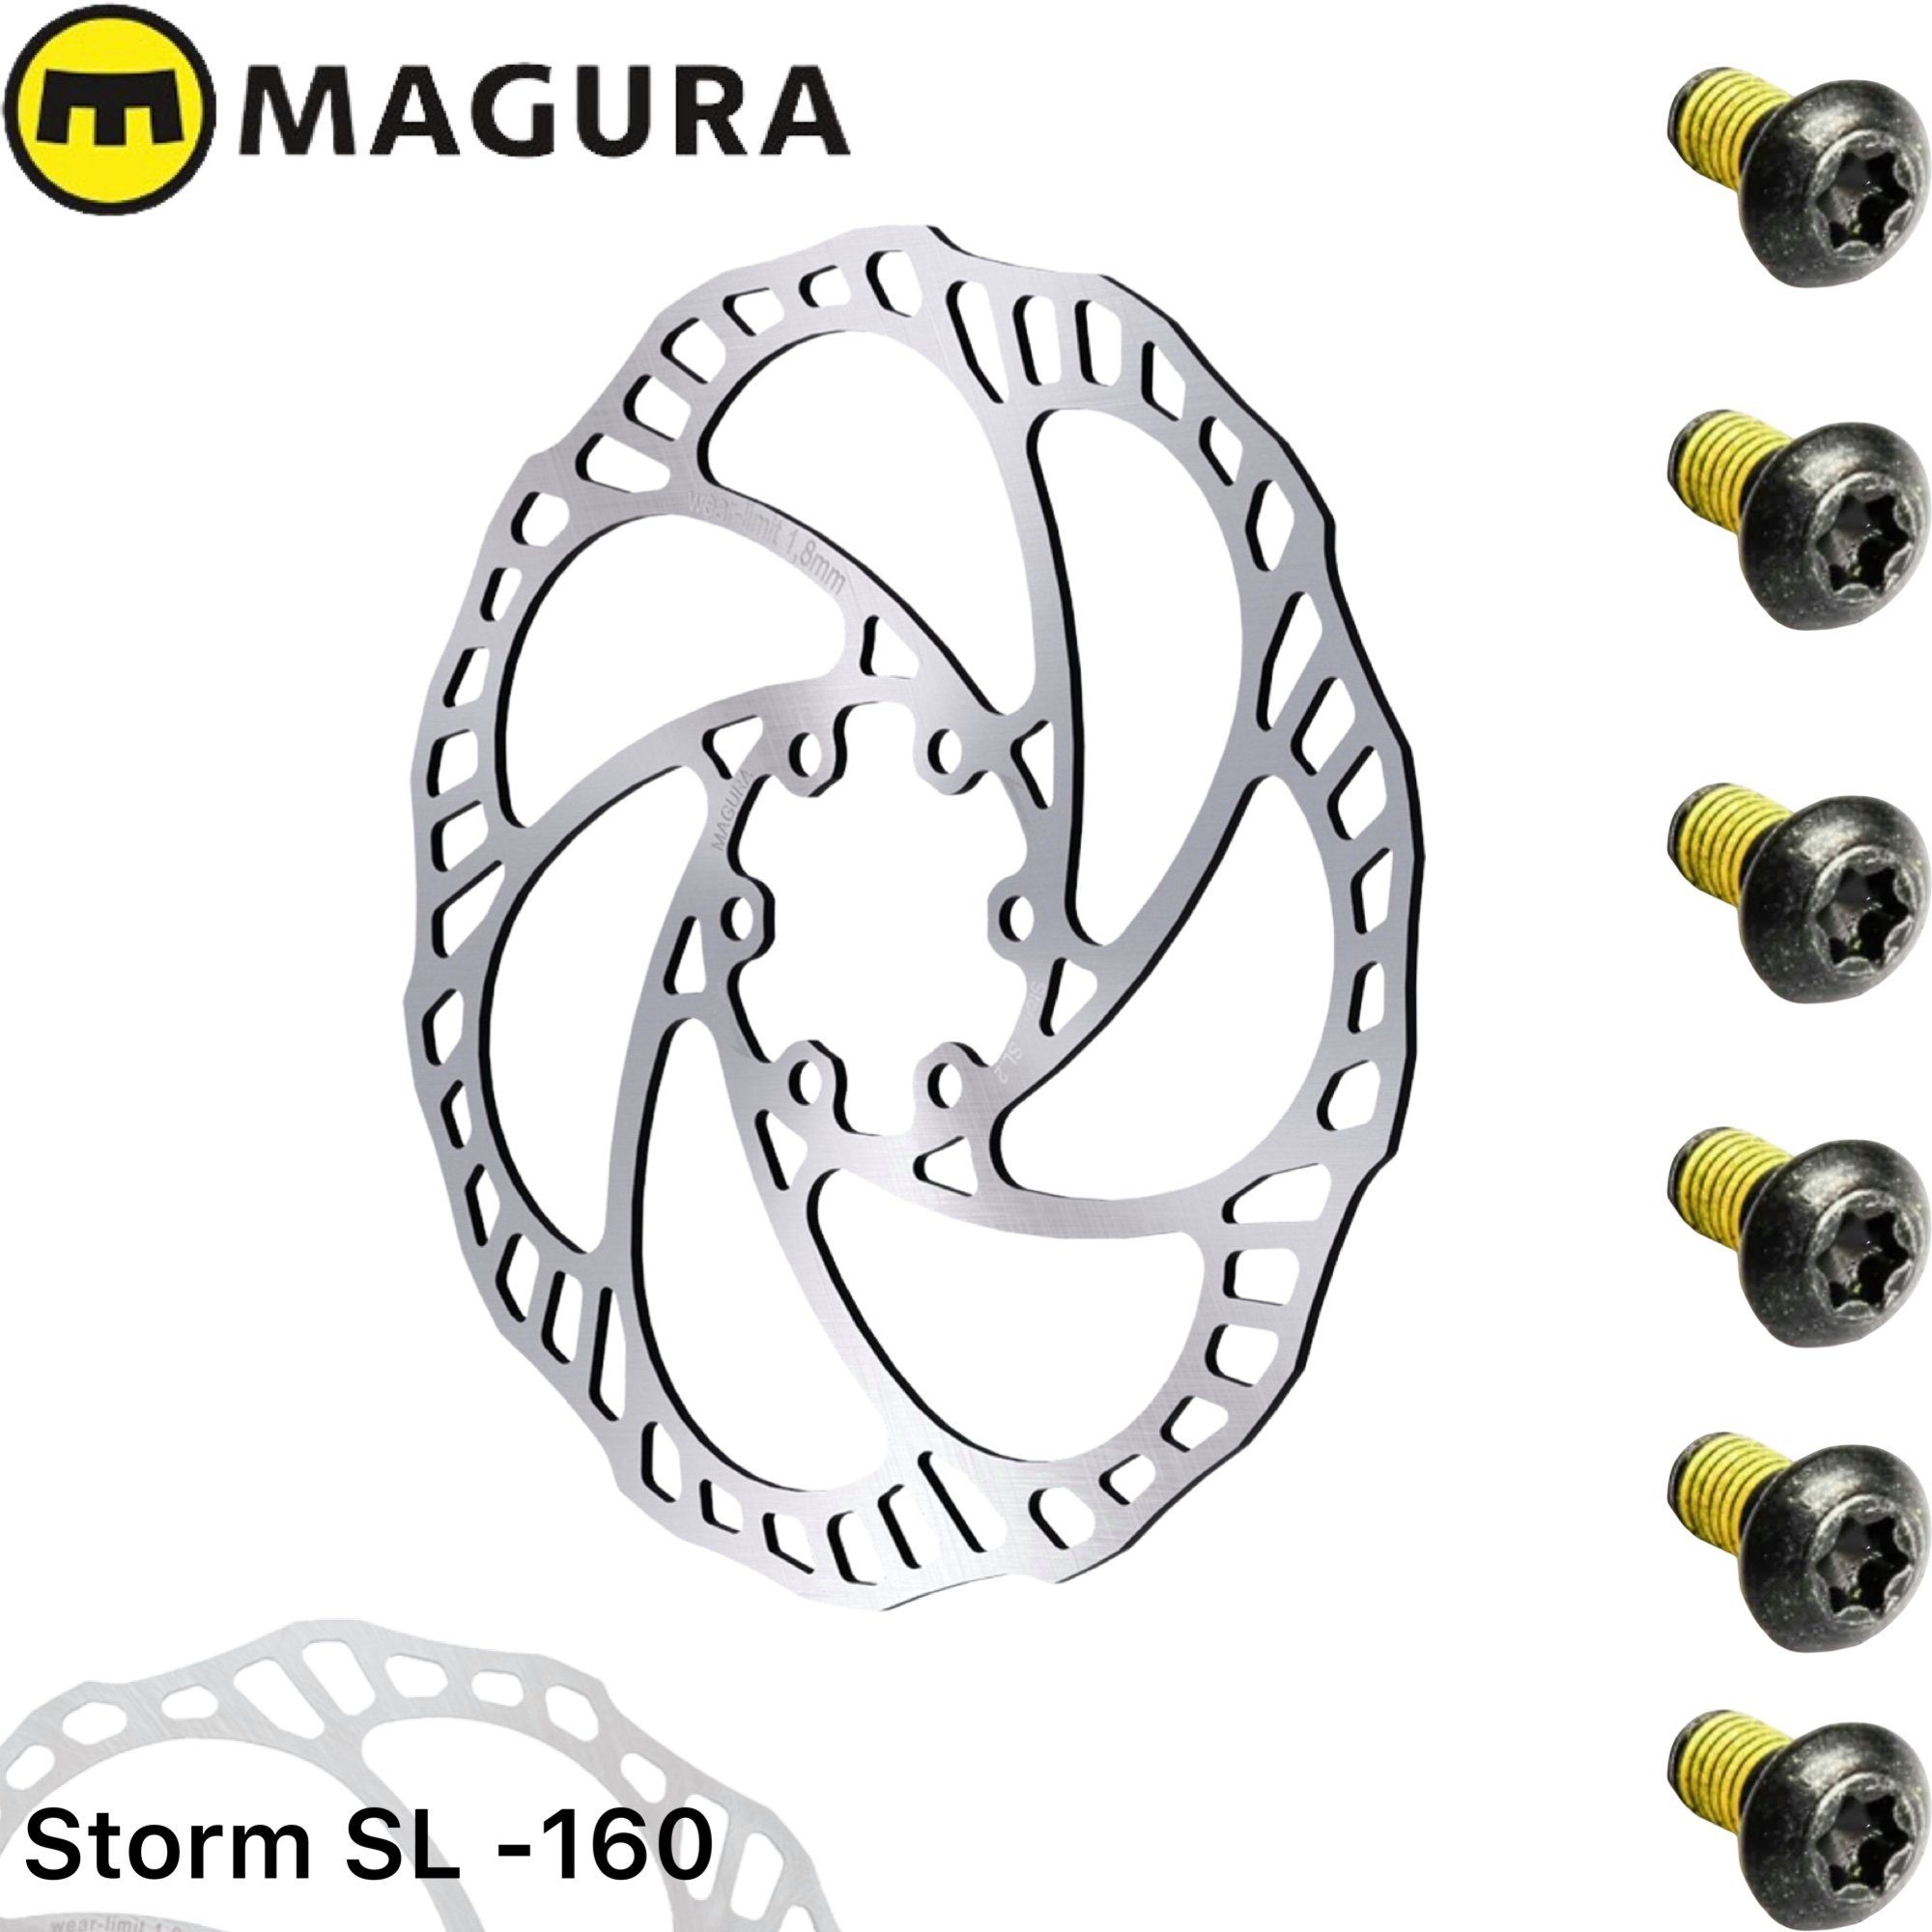 Magura Scheibenbremse SL.S Storm Light Magura 160mm Bremsscheibe 6-Loch